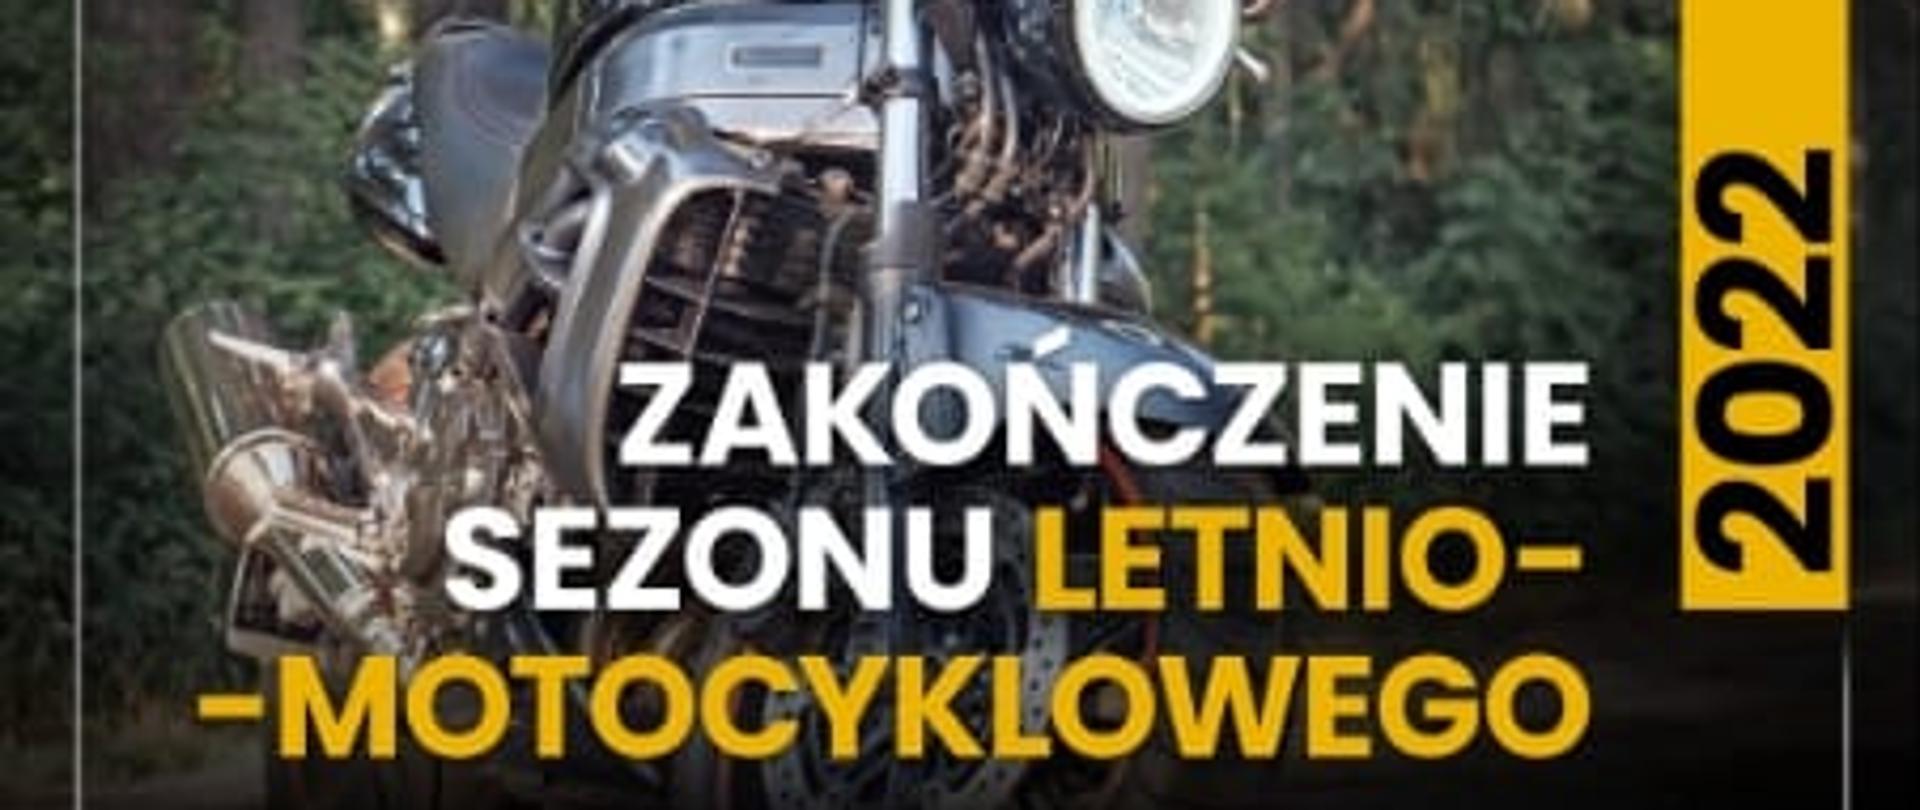 Zakończenie sezonu letnio-motocyklowego PCT Riders 22.10.2022 godz.19:00 MGOK Krzyż Wielkopolski 